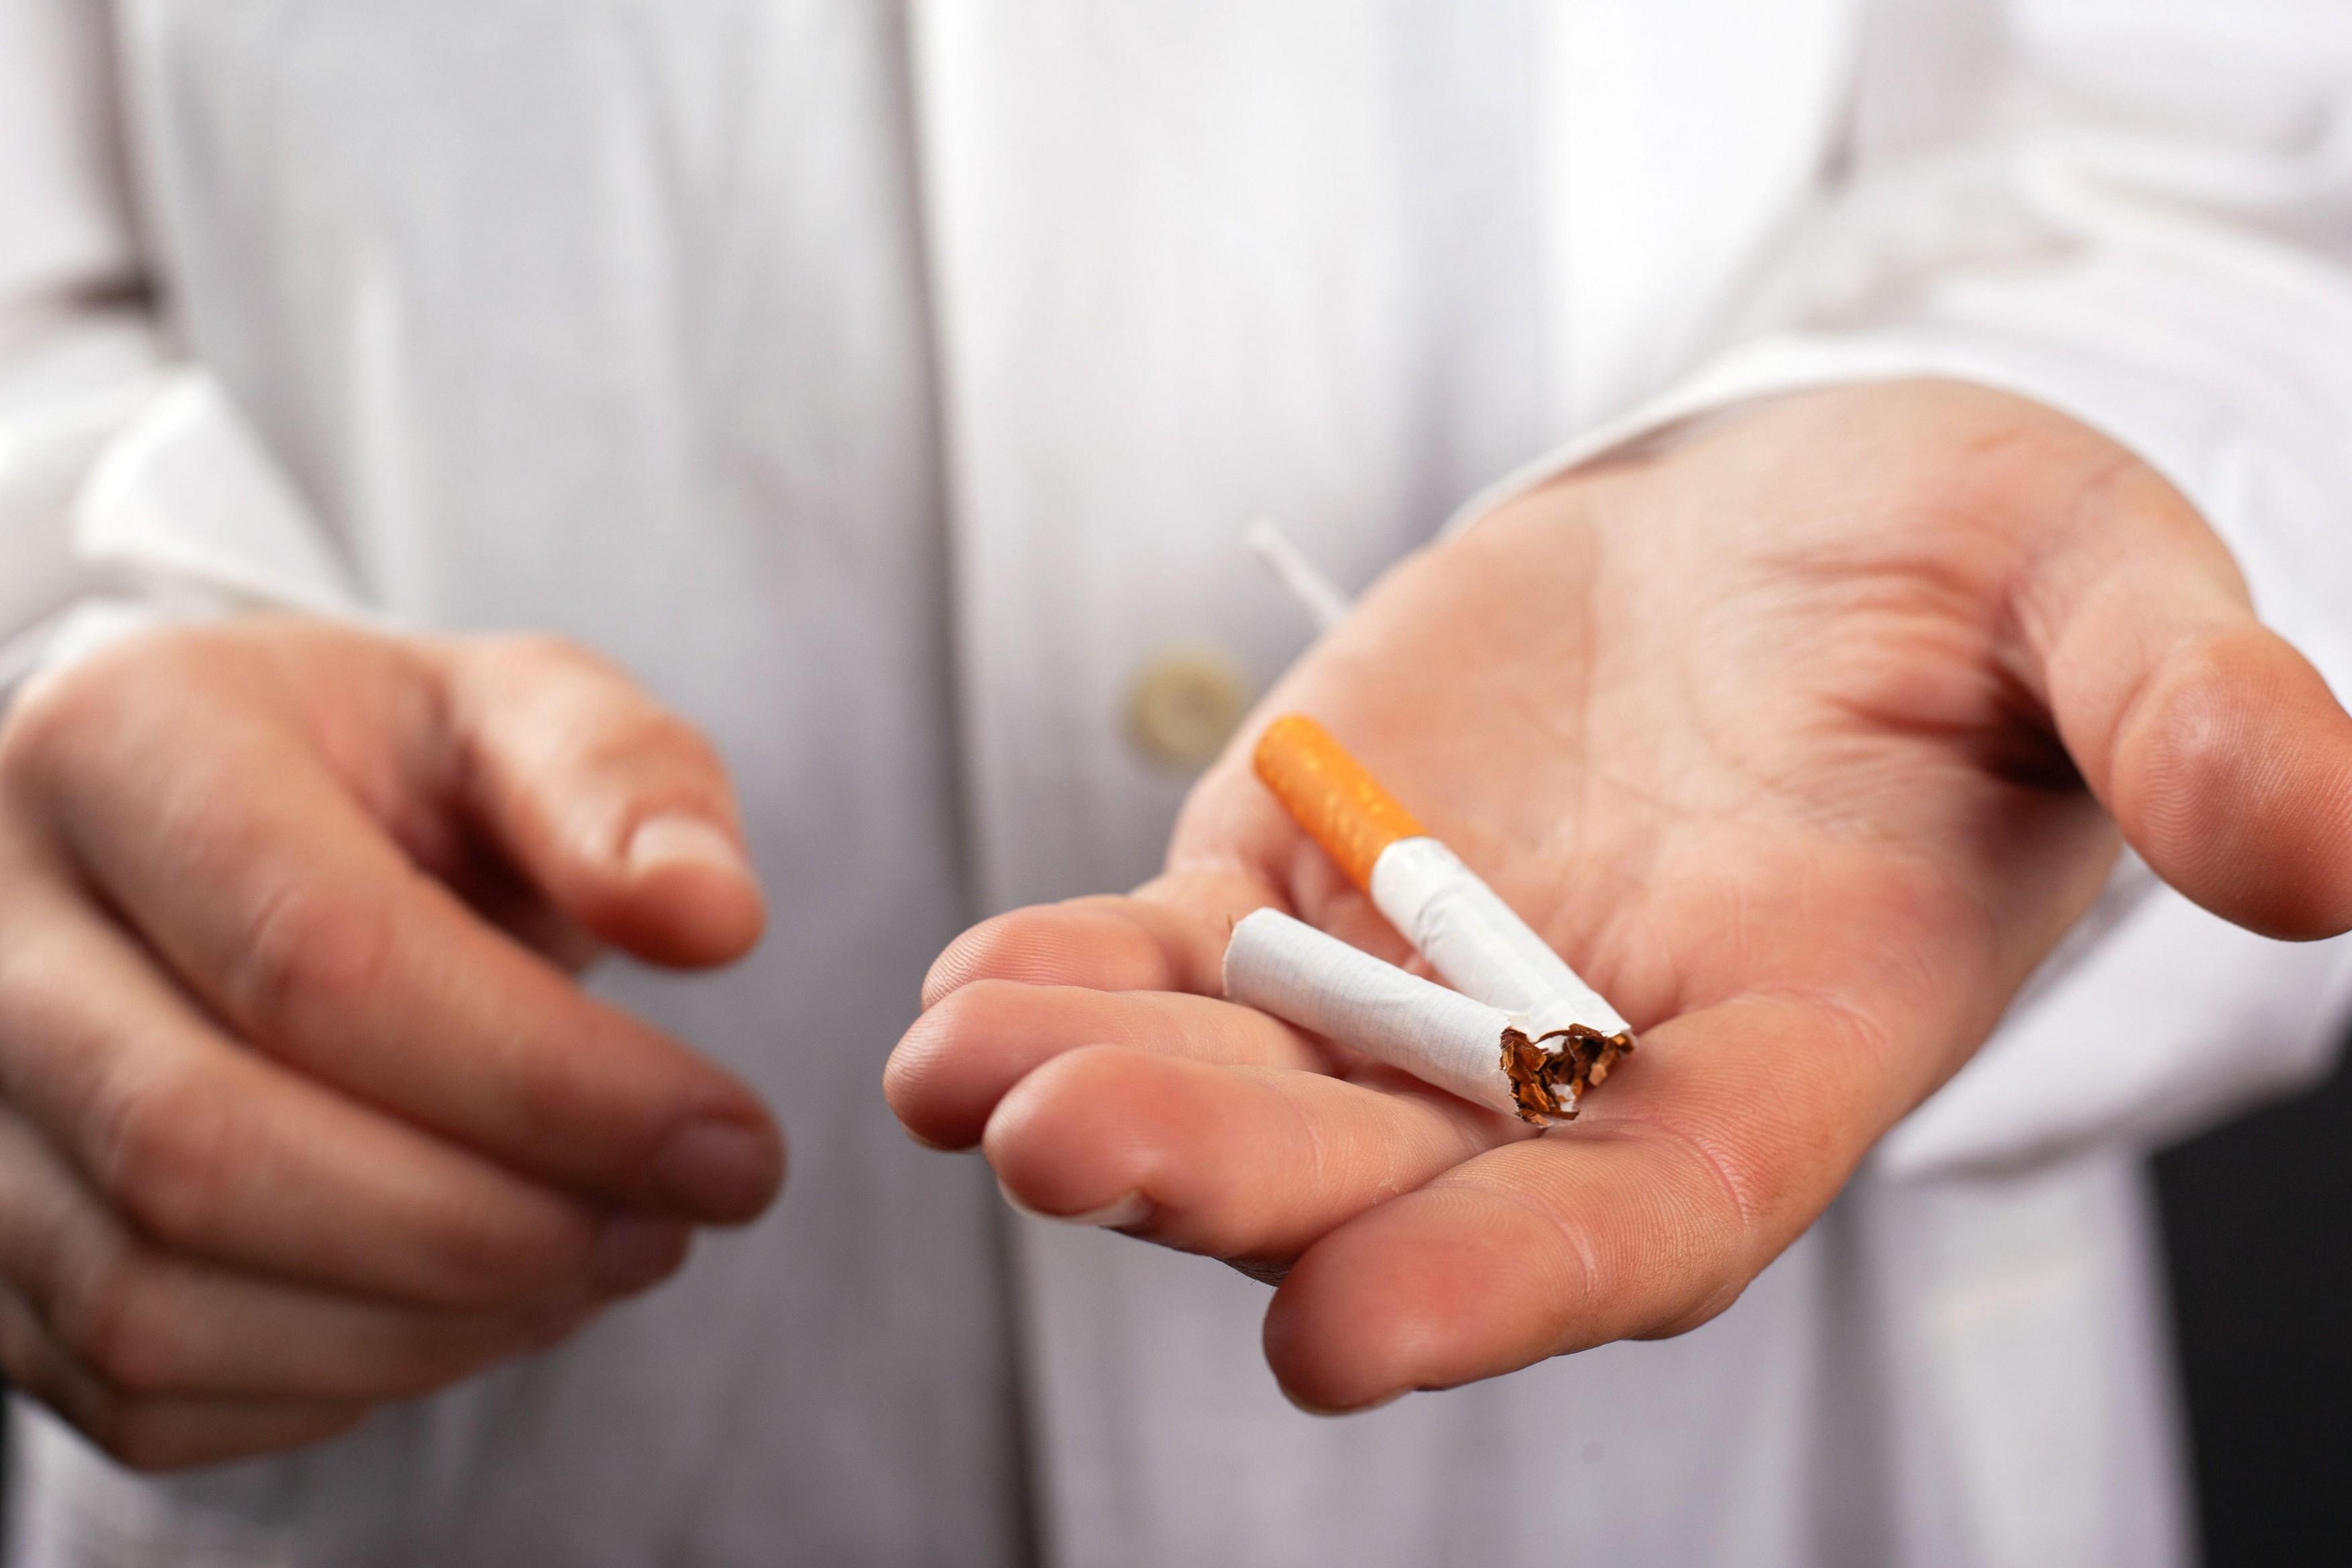 “Ministrstvo za zdravje opozarja: Kajenje je zdravju škodljivo”.